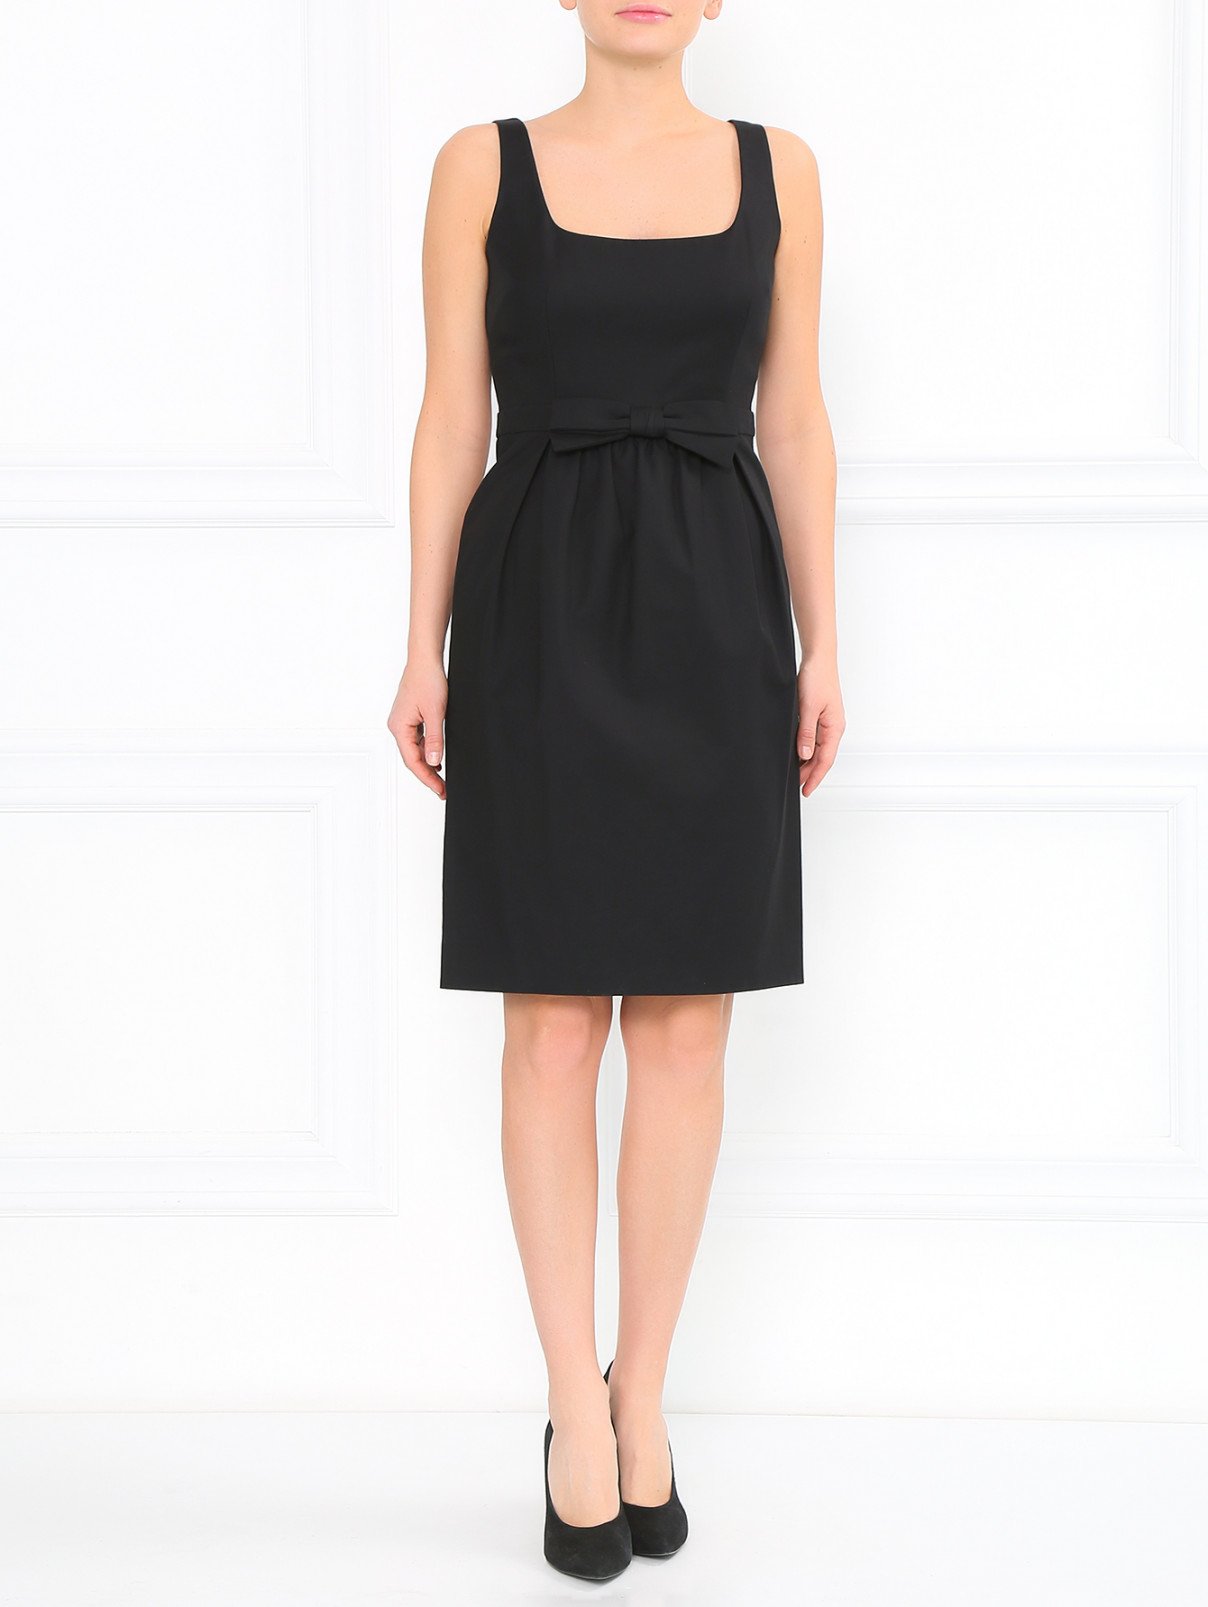 Платье из хлопка с декоративным бантом Moschino Cheap&Chic  –  Модель Общий вид  – Цвет:  Черный